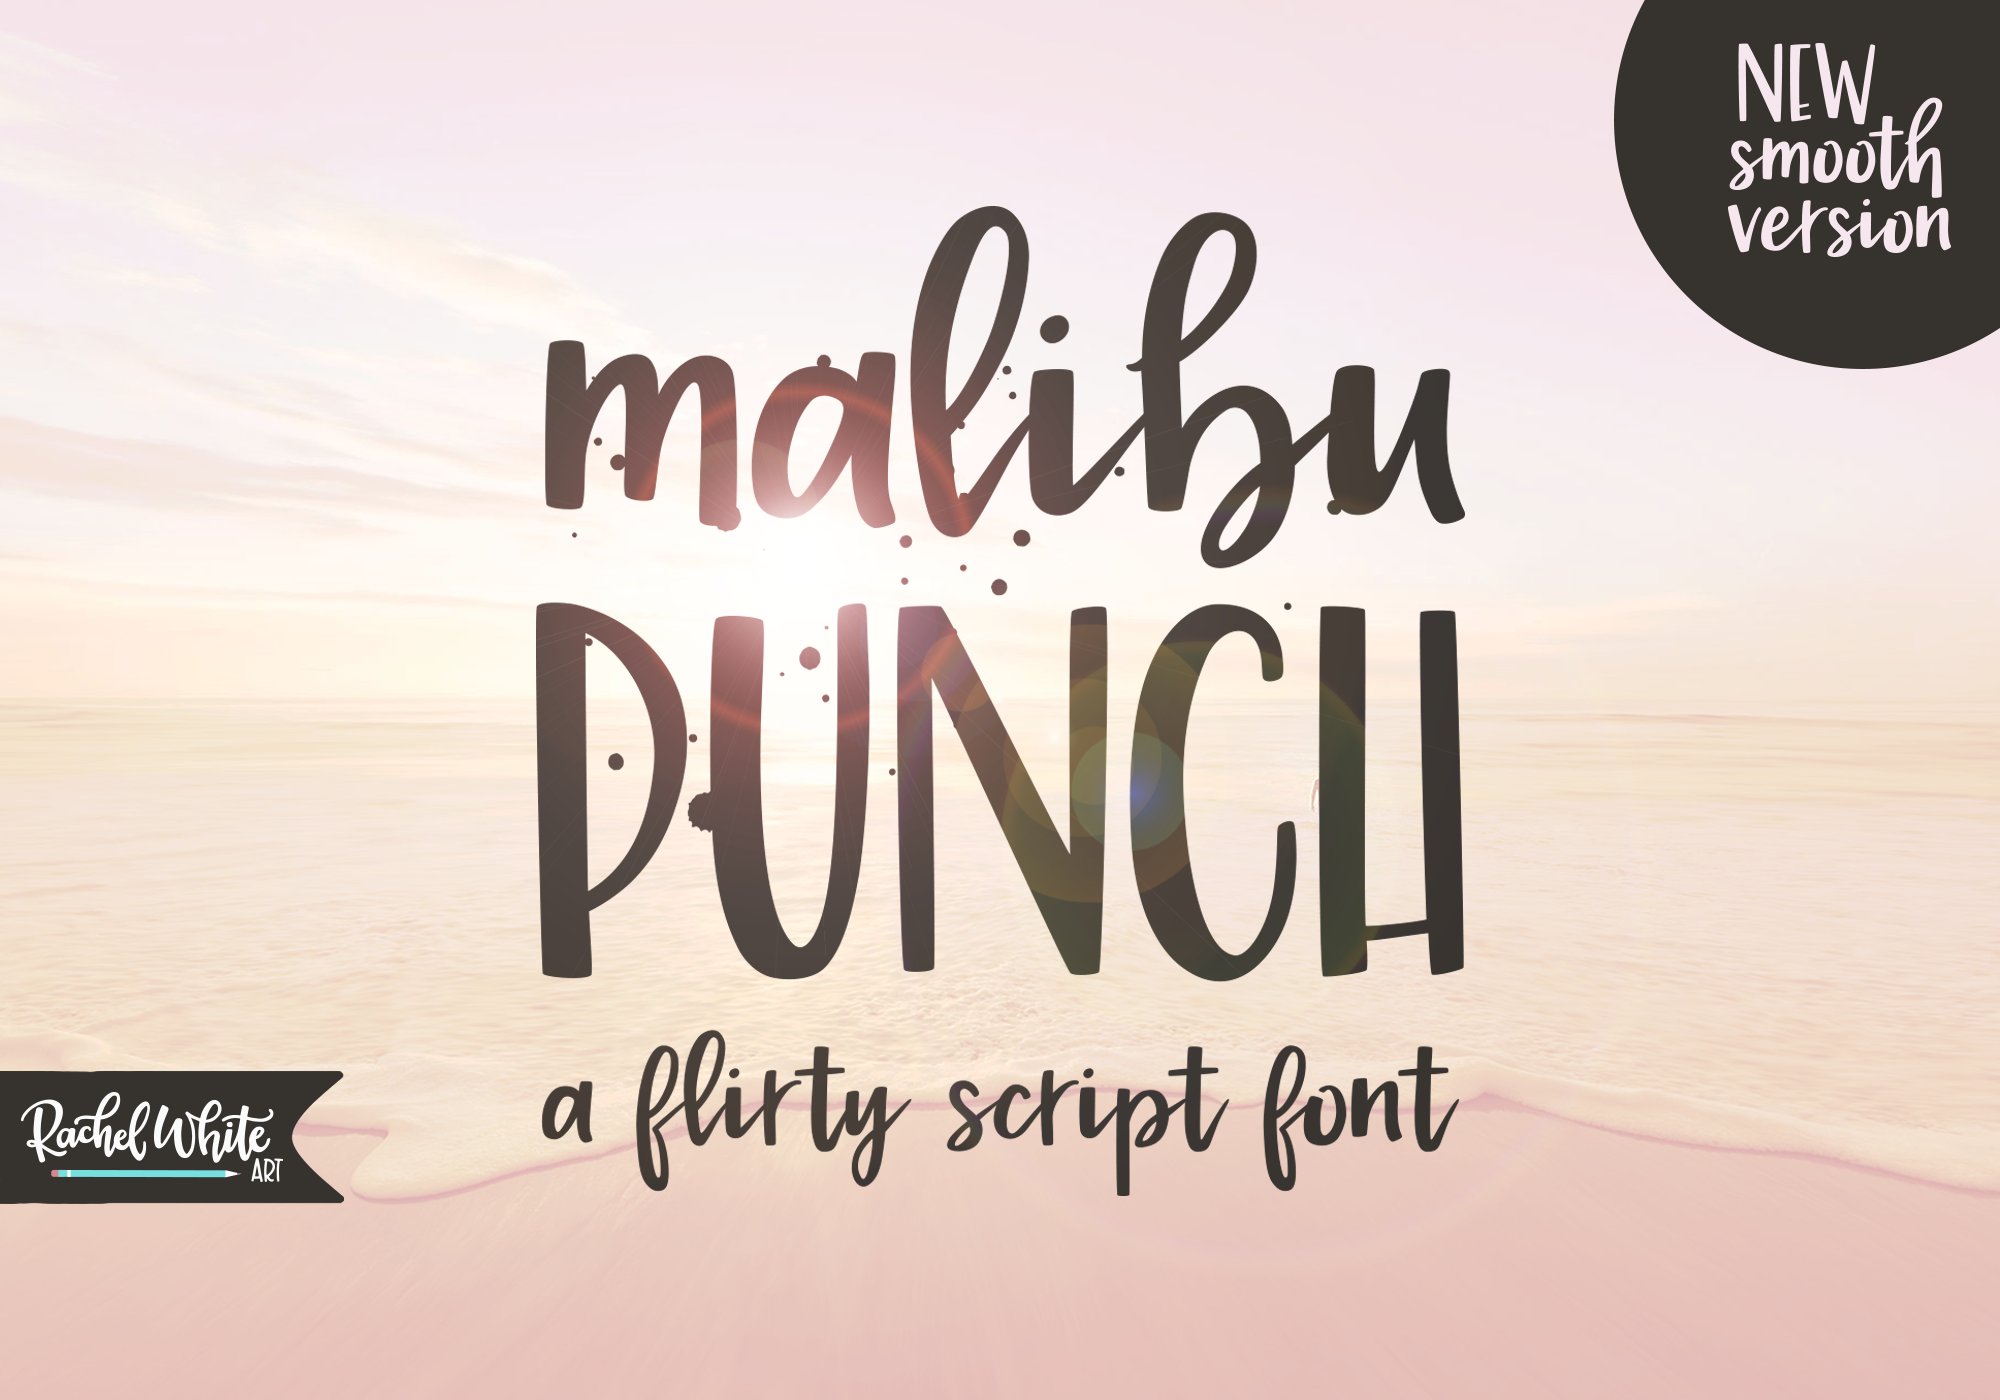 Malibu Punch, a flirty brush font cover image.